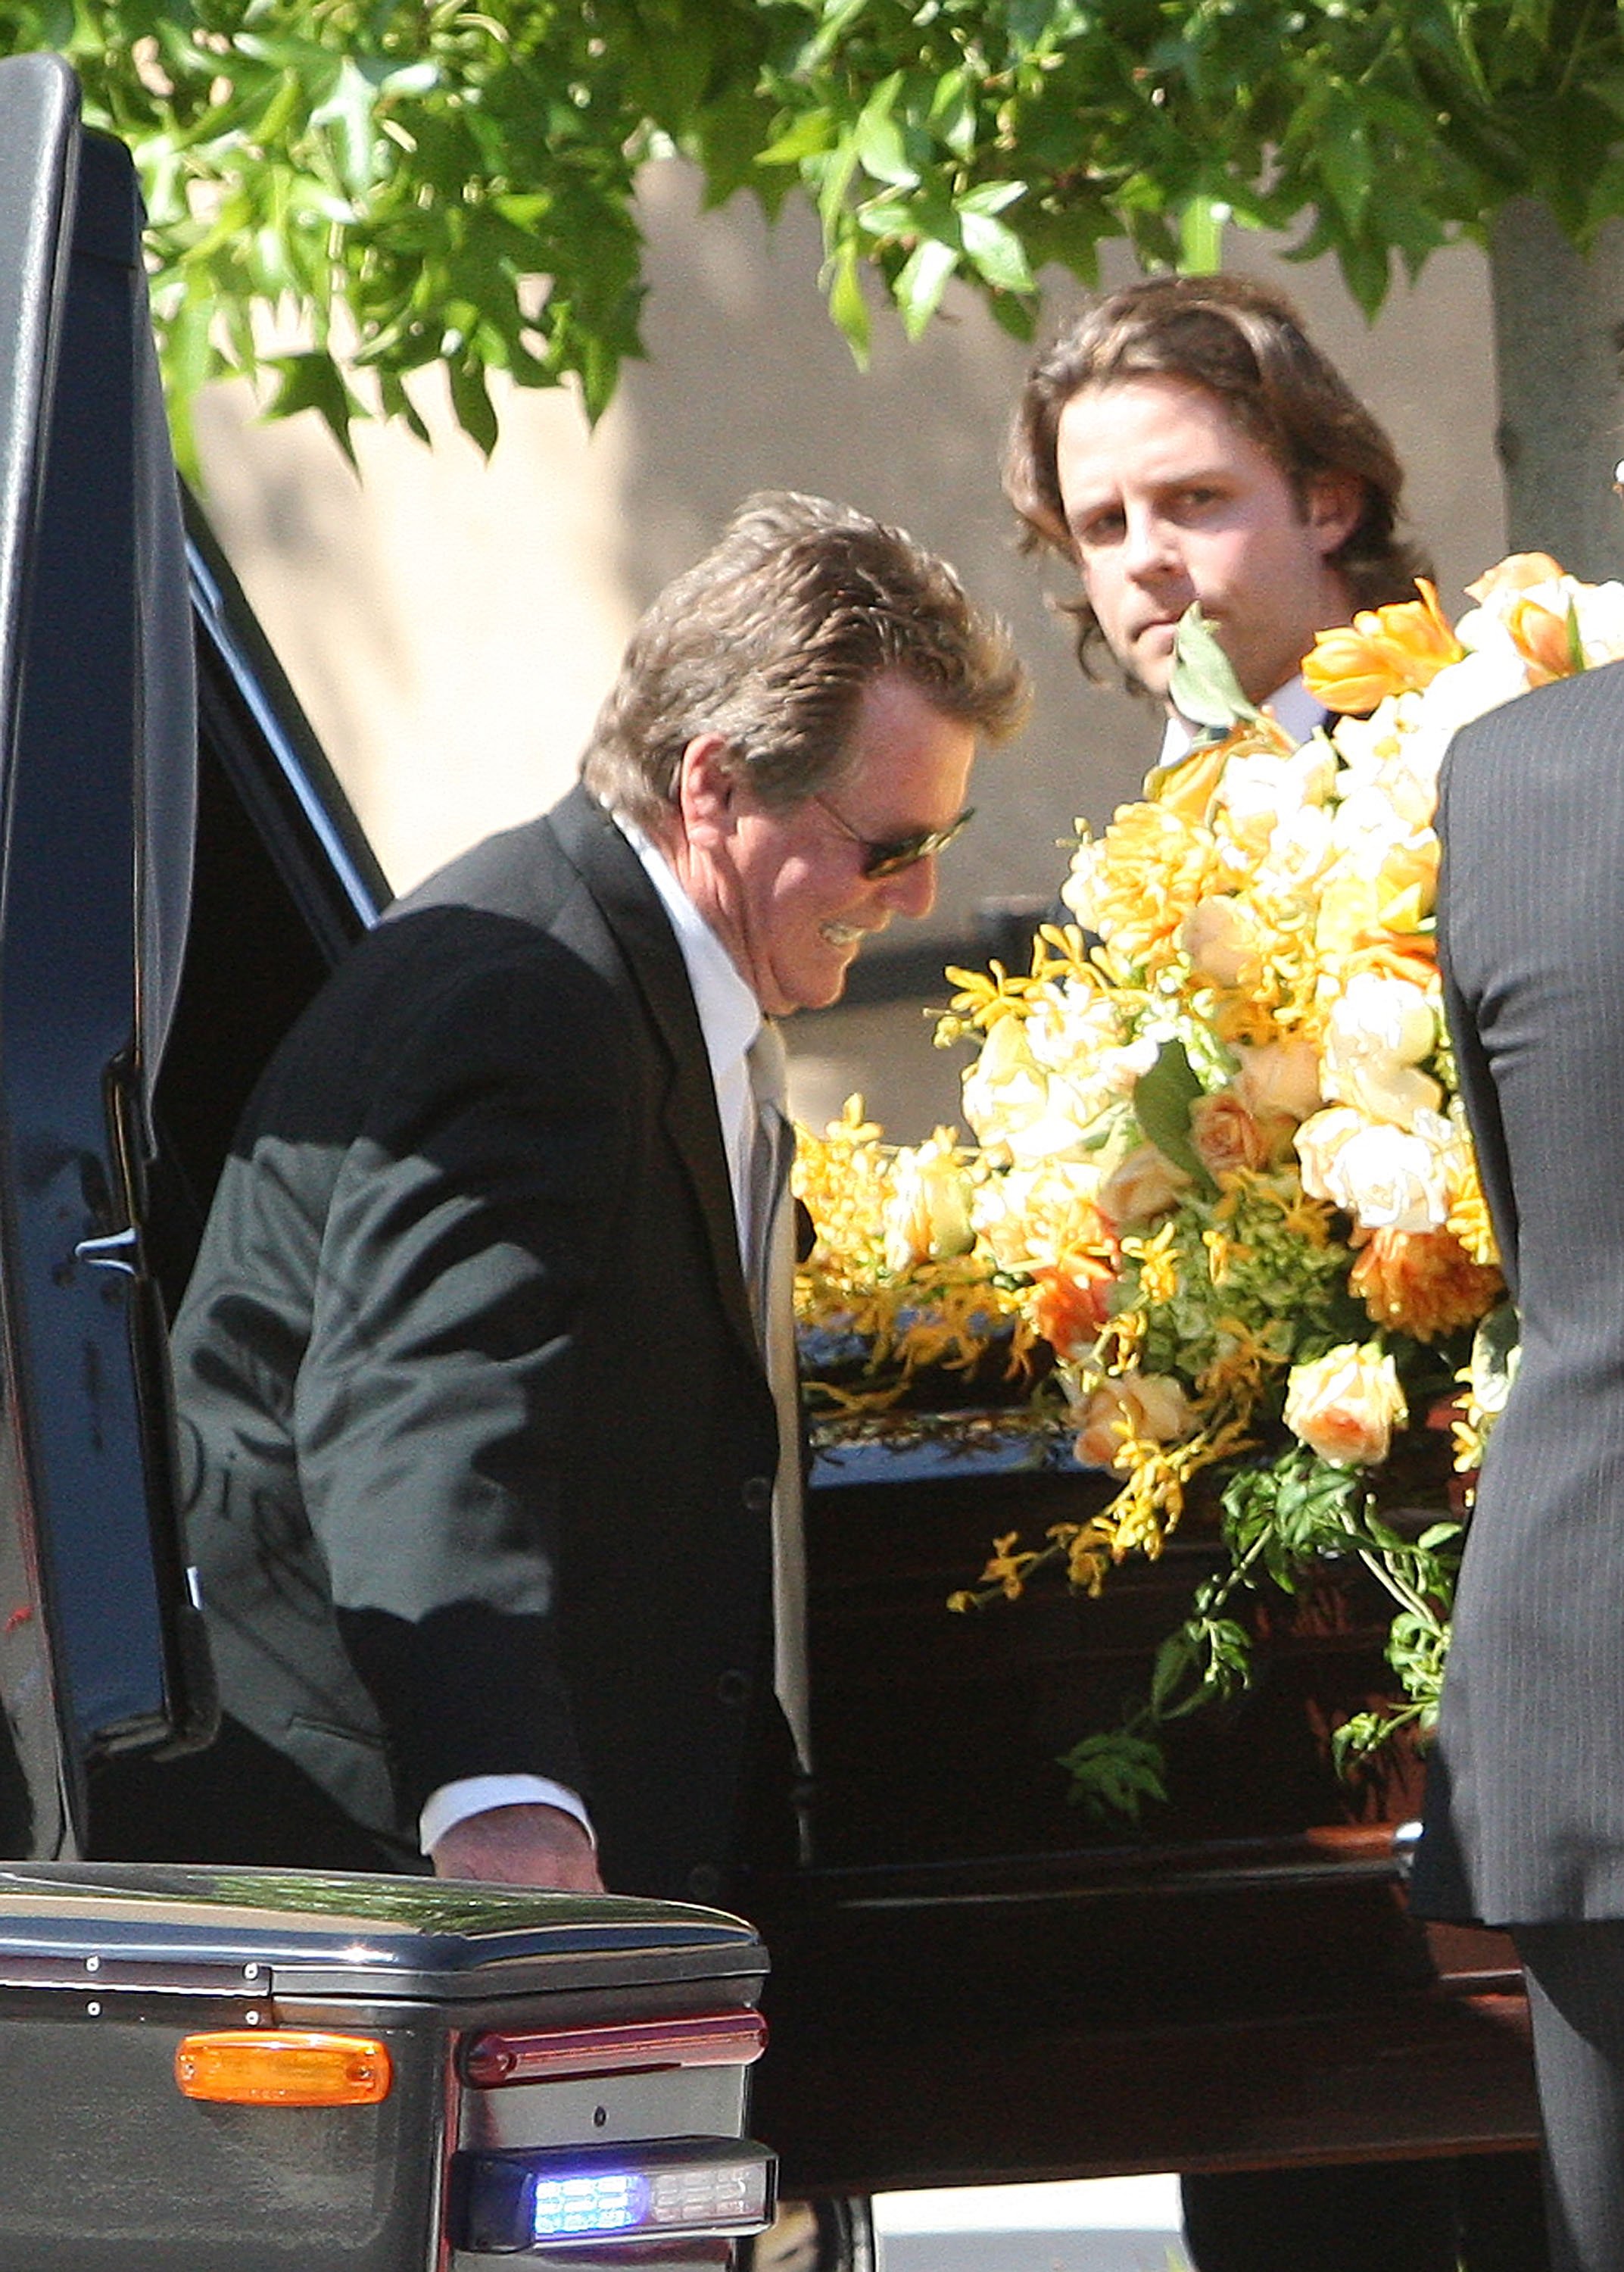 Ryan O'Neal asiste al funeral de Farrah Fawcett en la Catedral de Nuestra Señora de los Ángeles, el 30 de junio de 2009 en Los Ángeles, California | Foto: Getty Images